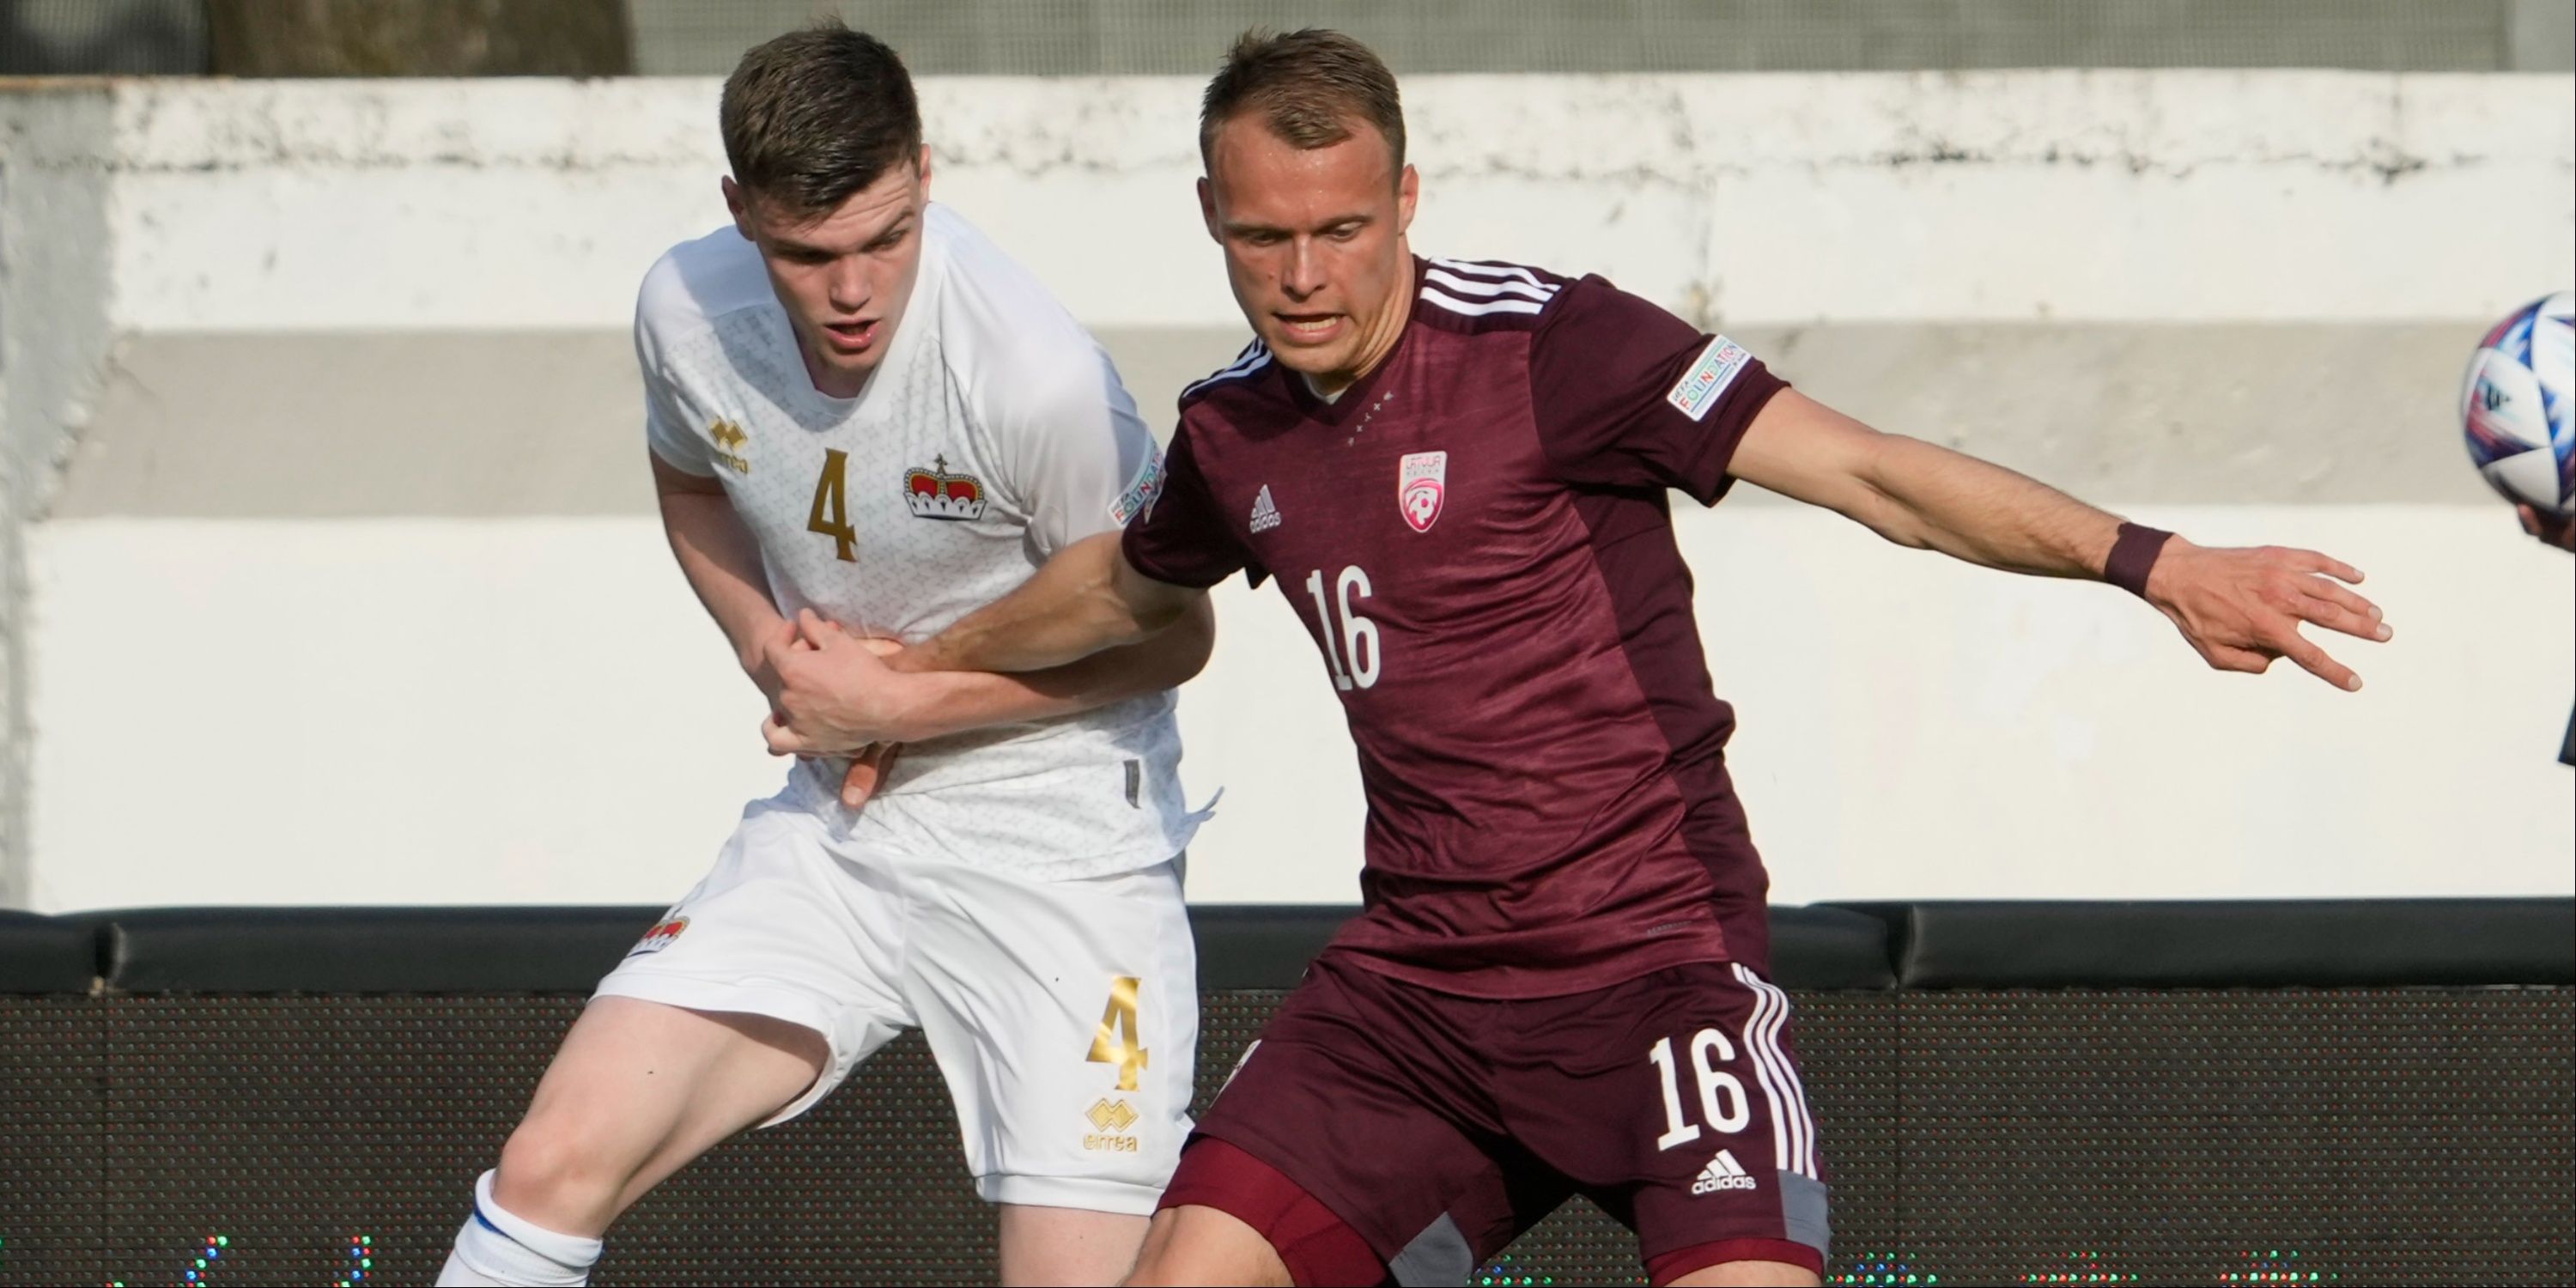 Latvia's Alvis Jaunzems in action with Liechtenstein's Andrin Netzer